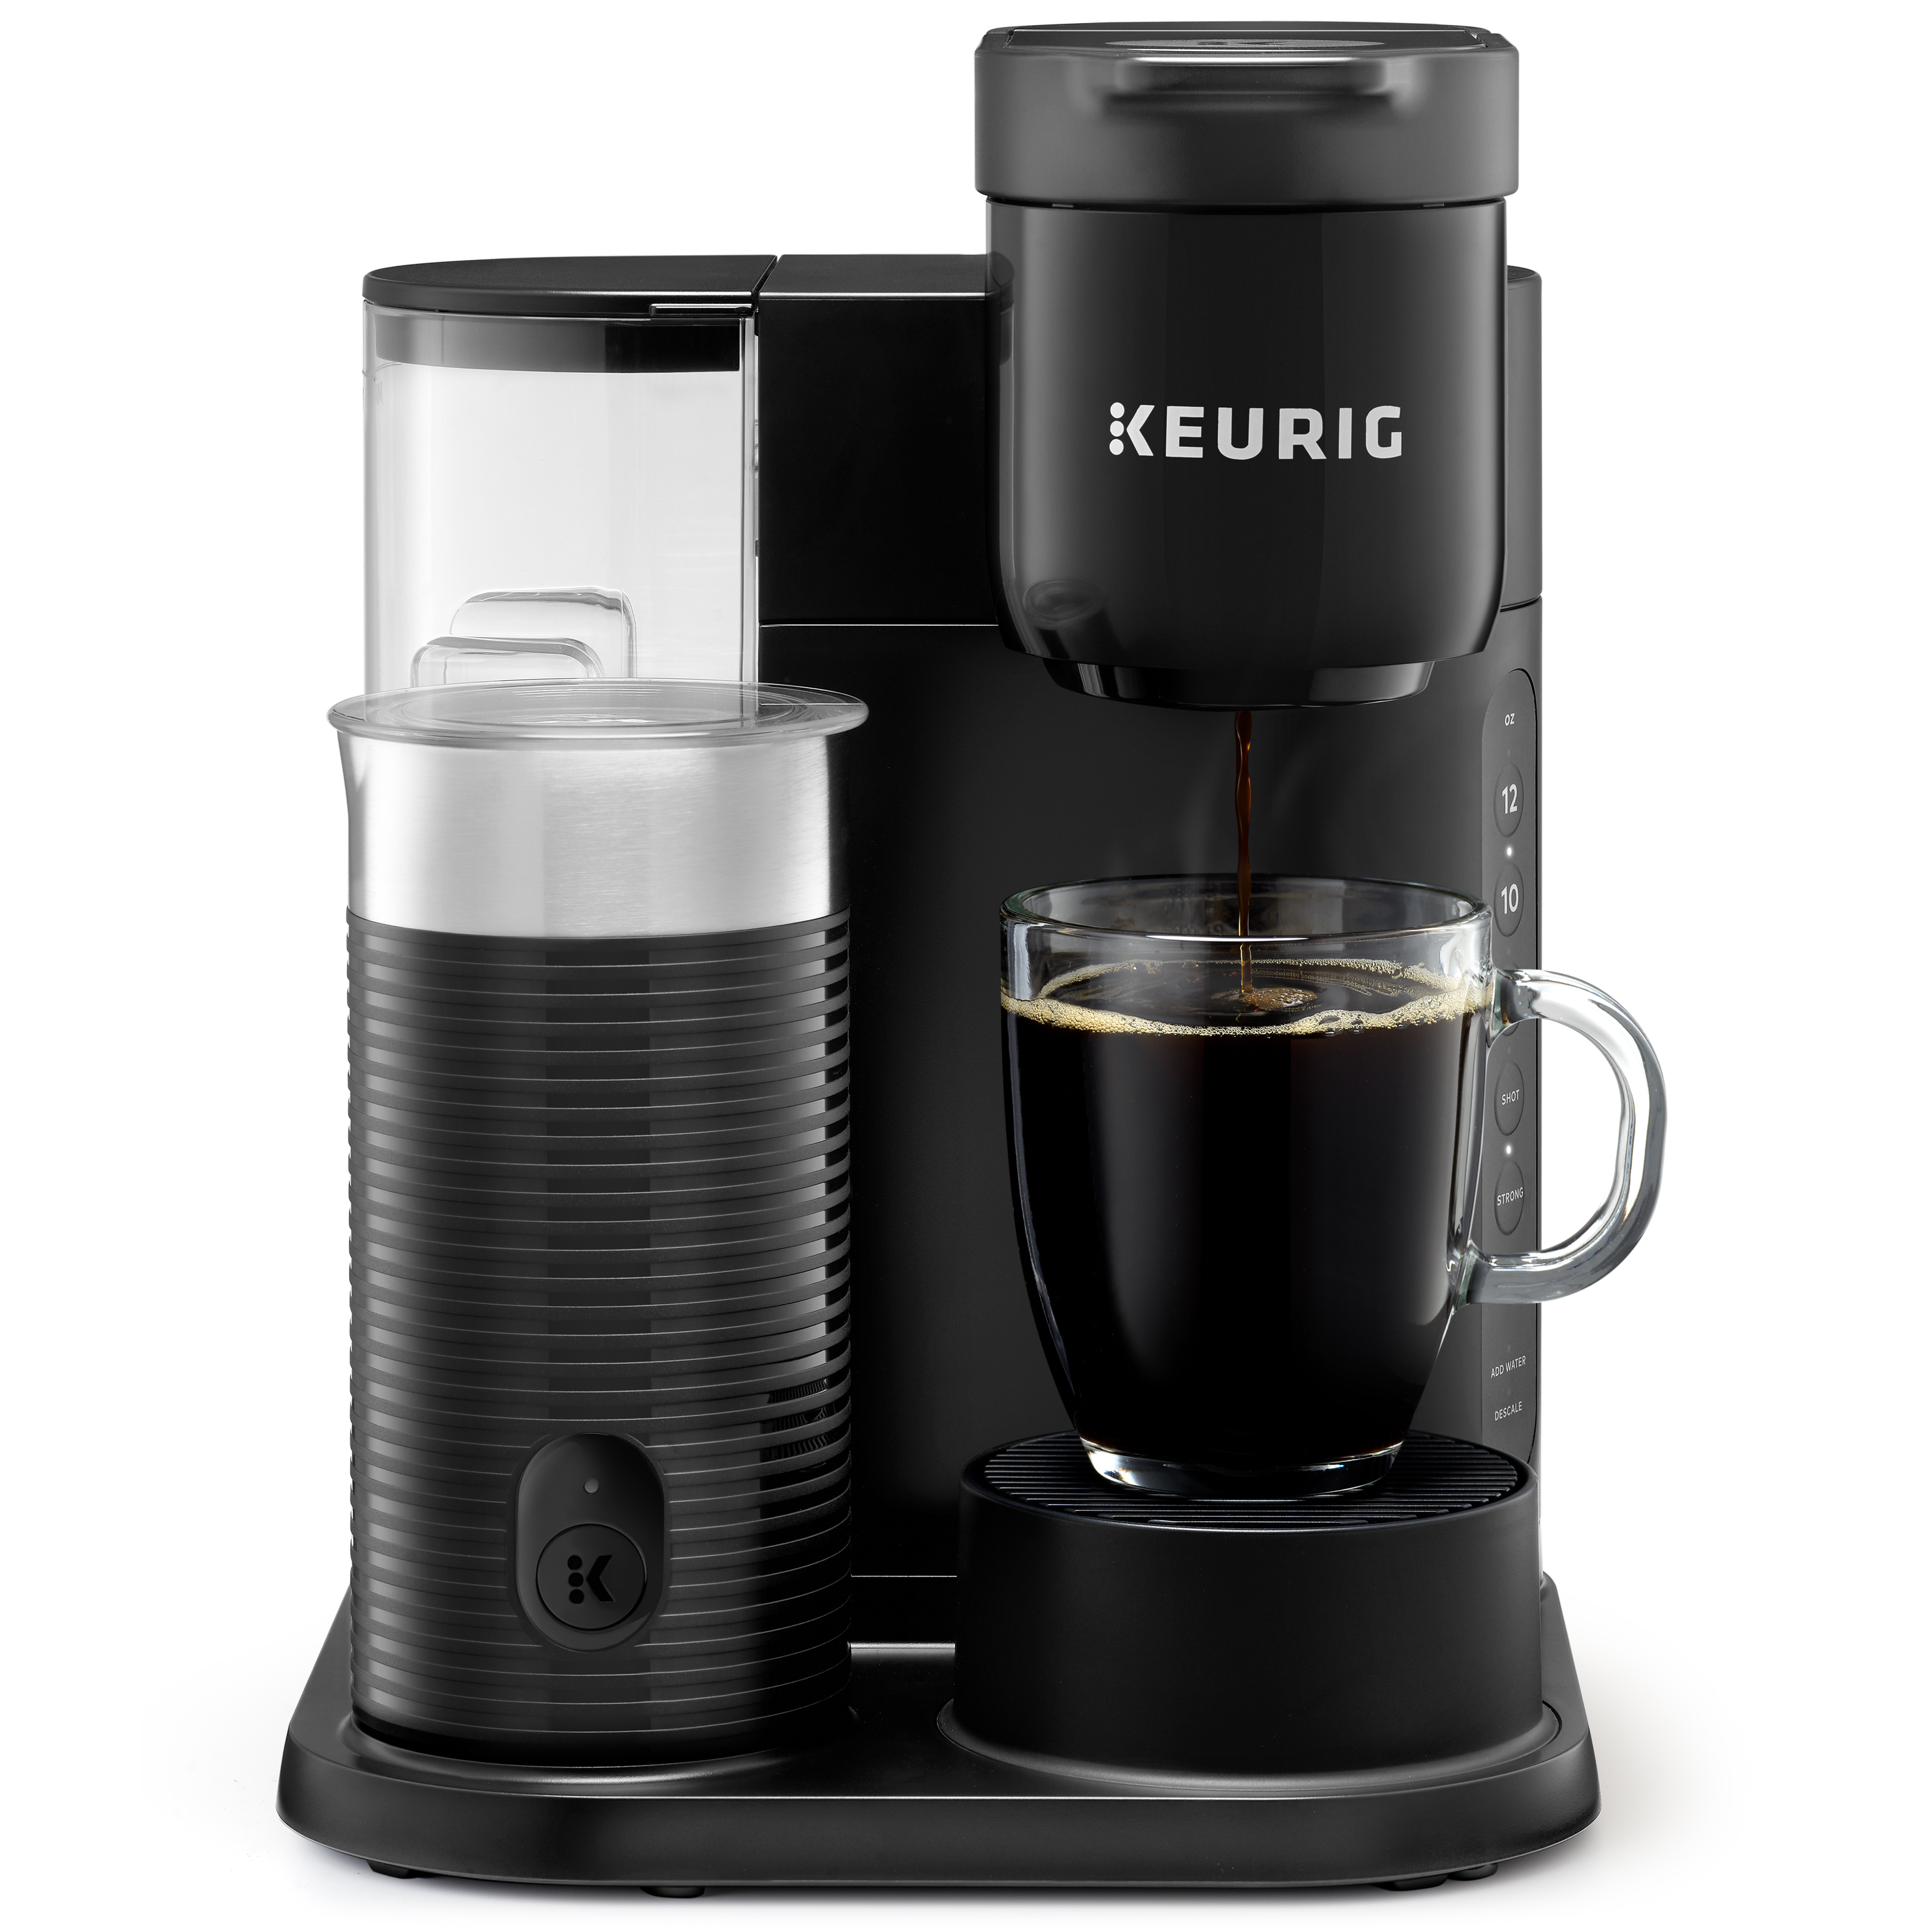  Keurig K-Cafe Special Edition Single Serve K-Cup Pod